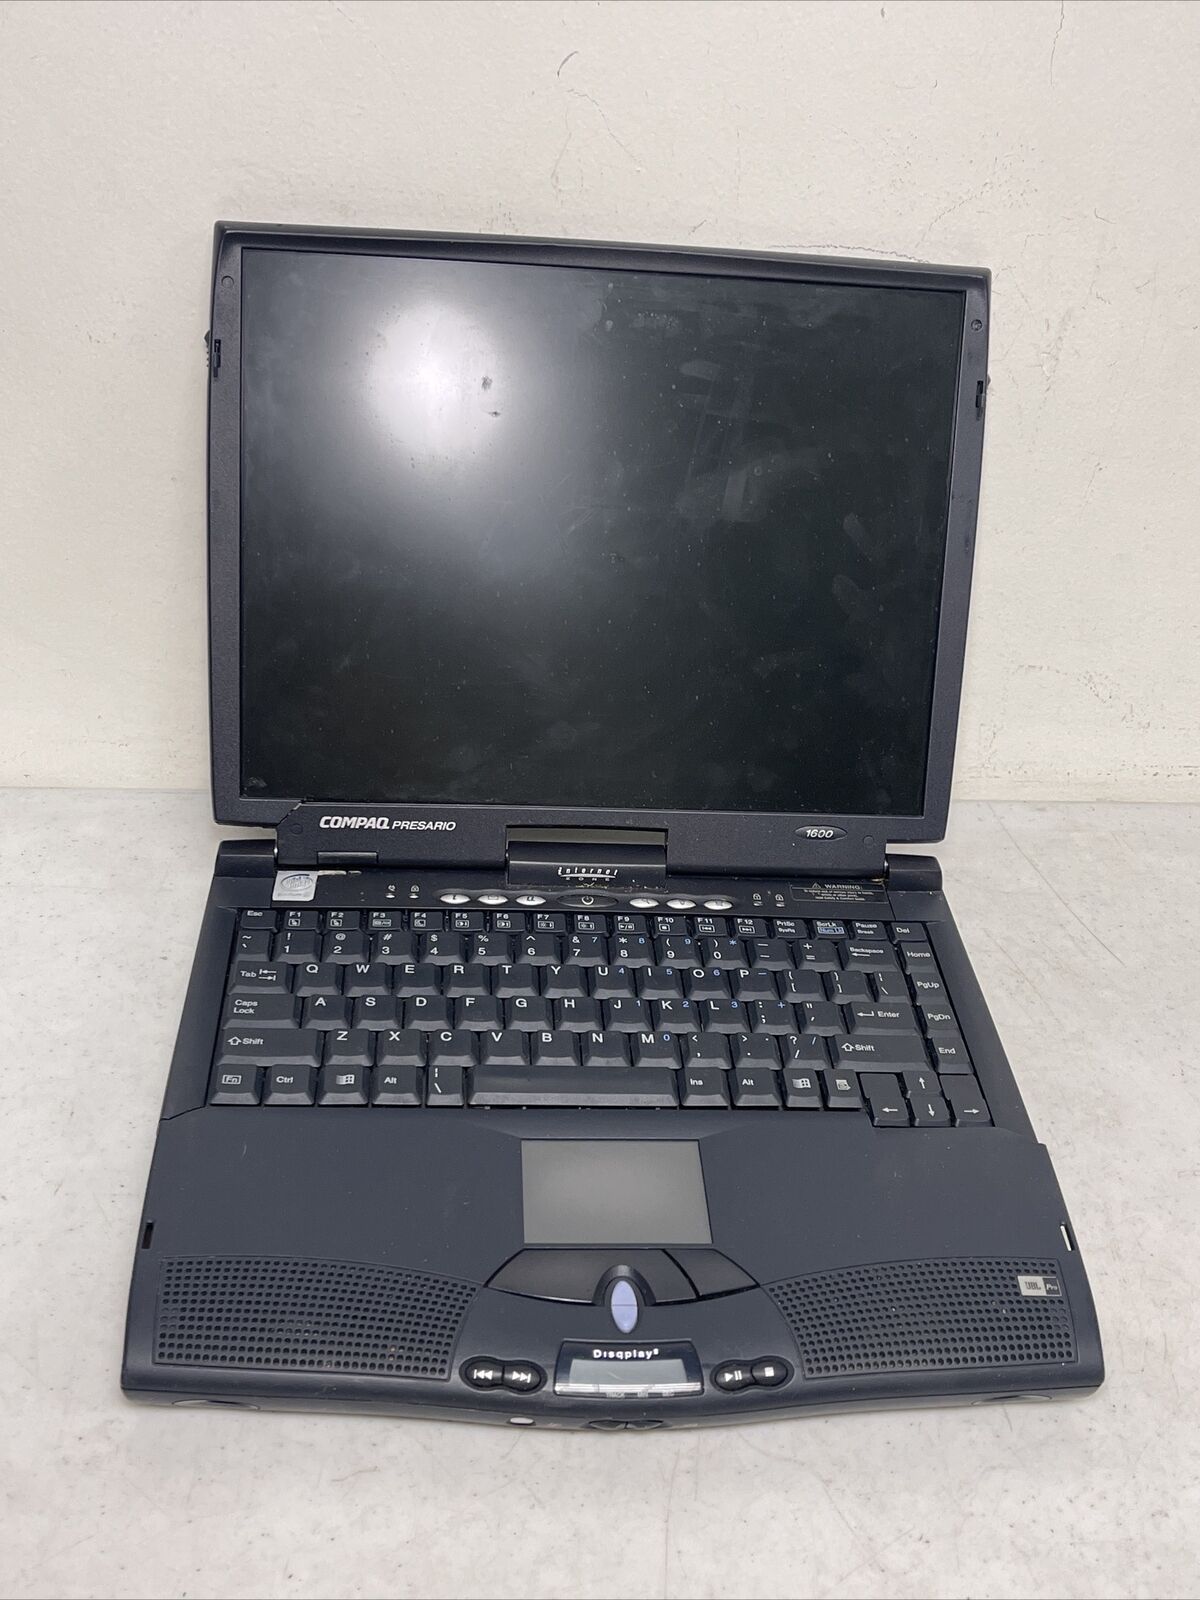 Rare Vintage Compaq Presario 1600 Laptop Pentium II 300MHz - AS-IS, UNTESTED